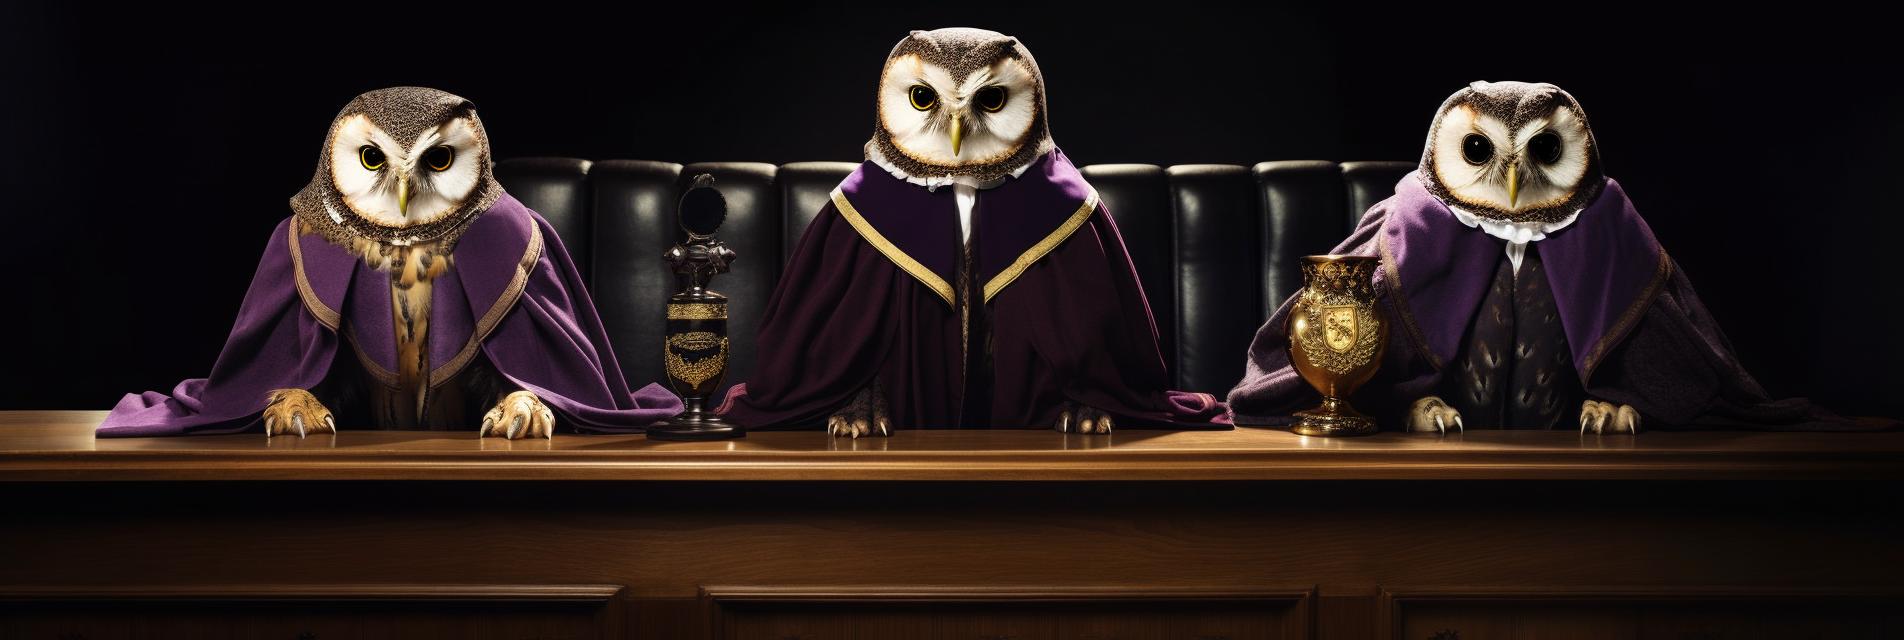 Trzy sowy ubrane w sędziowskie togi symbolizujące skład sądu